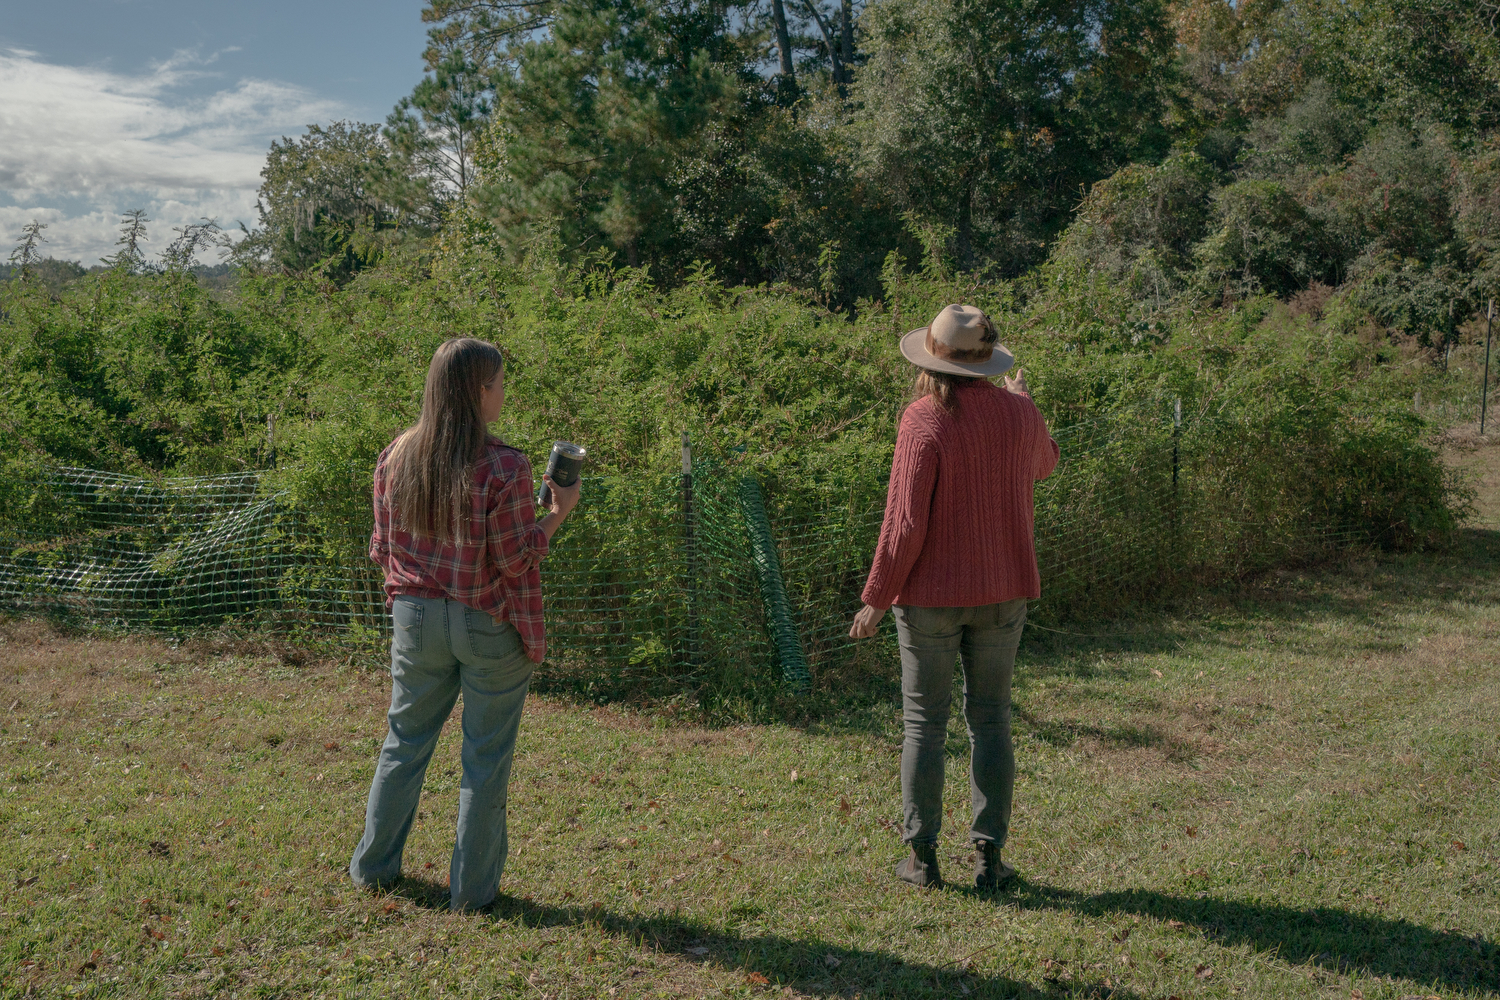 Kelly Fort, who runs Pluff Mudd Farm with her husband Dale, shows Ellie Maas Davis their field of indigo, in Wadmalaw Island, South Carolina.